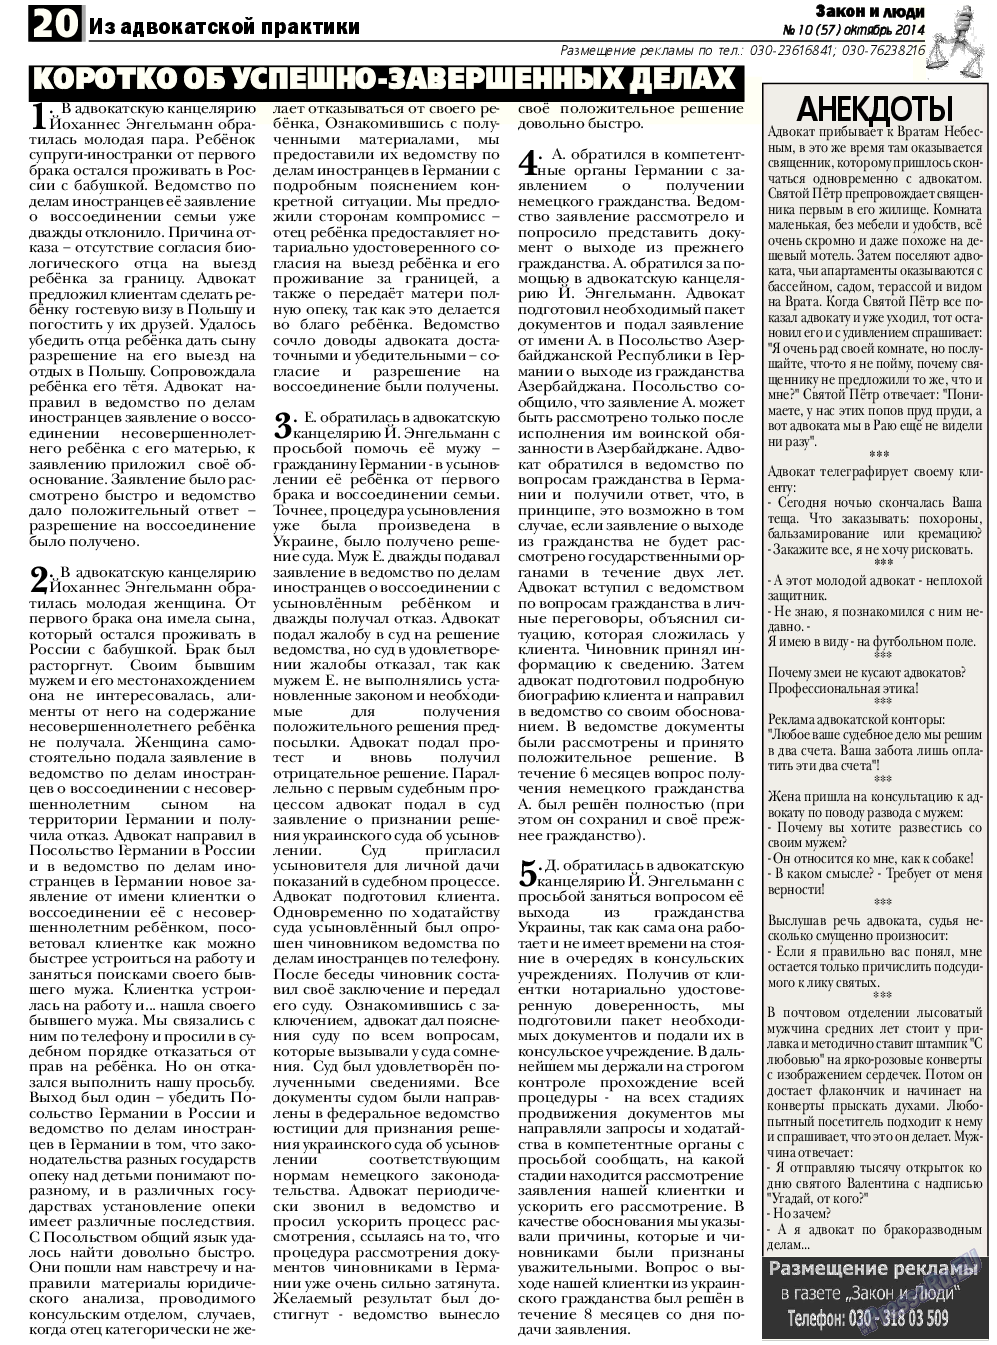 Закон и люди, газета. 2014 №10 стр.20